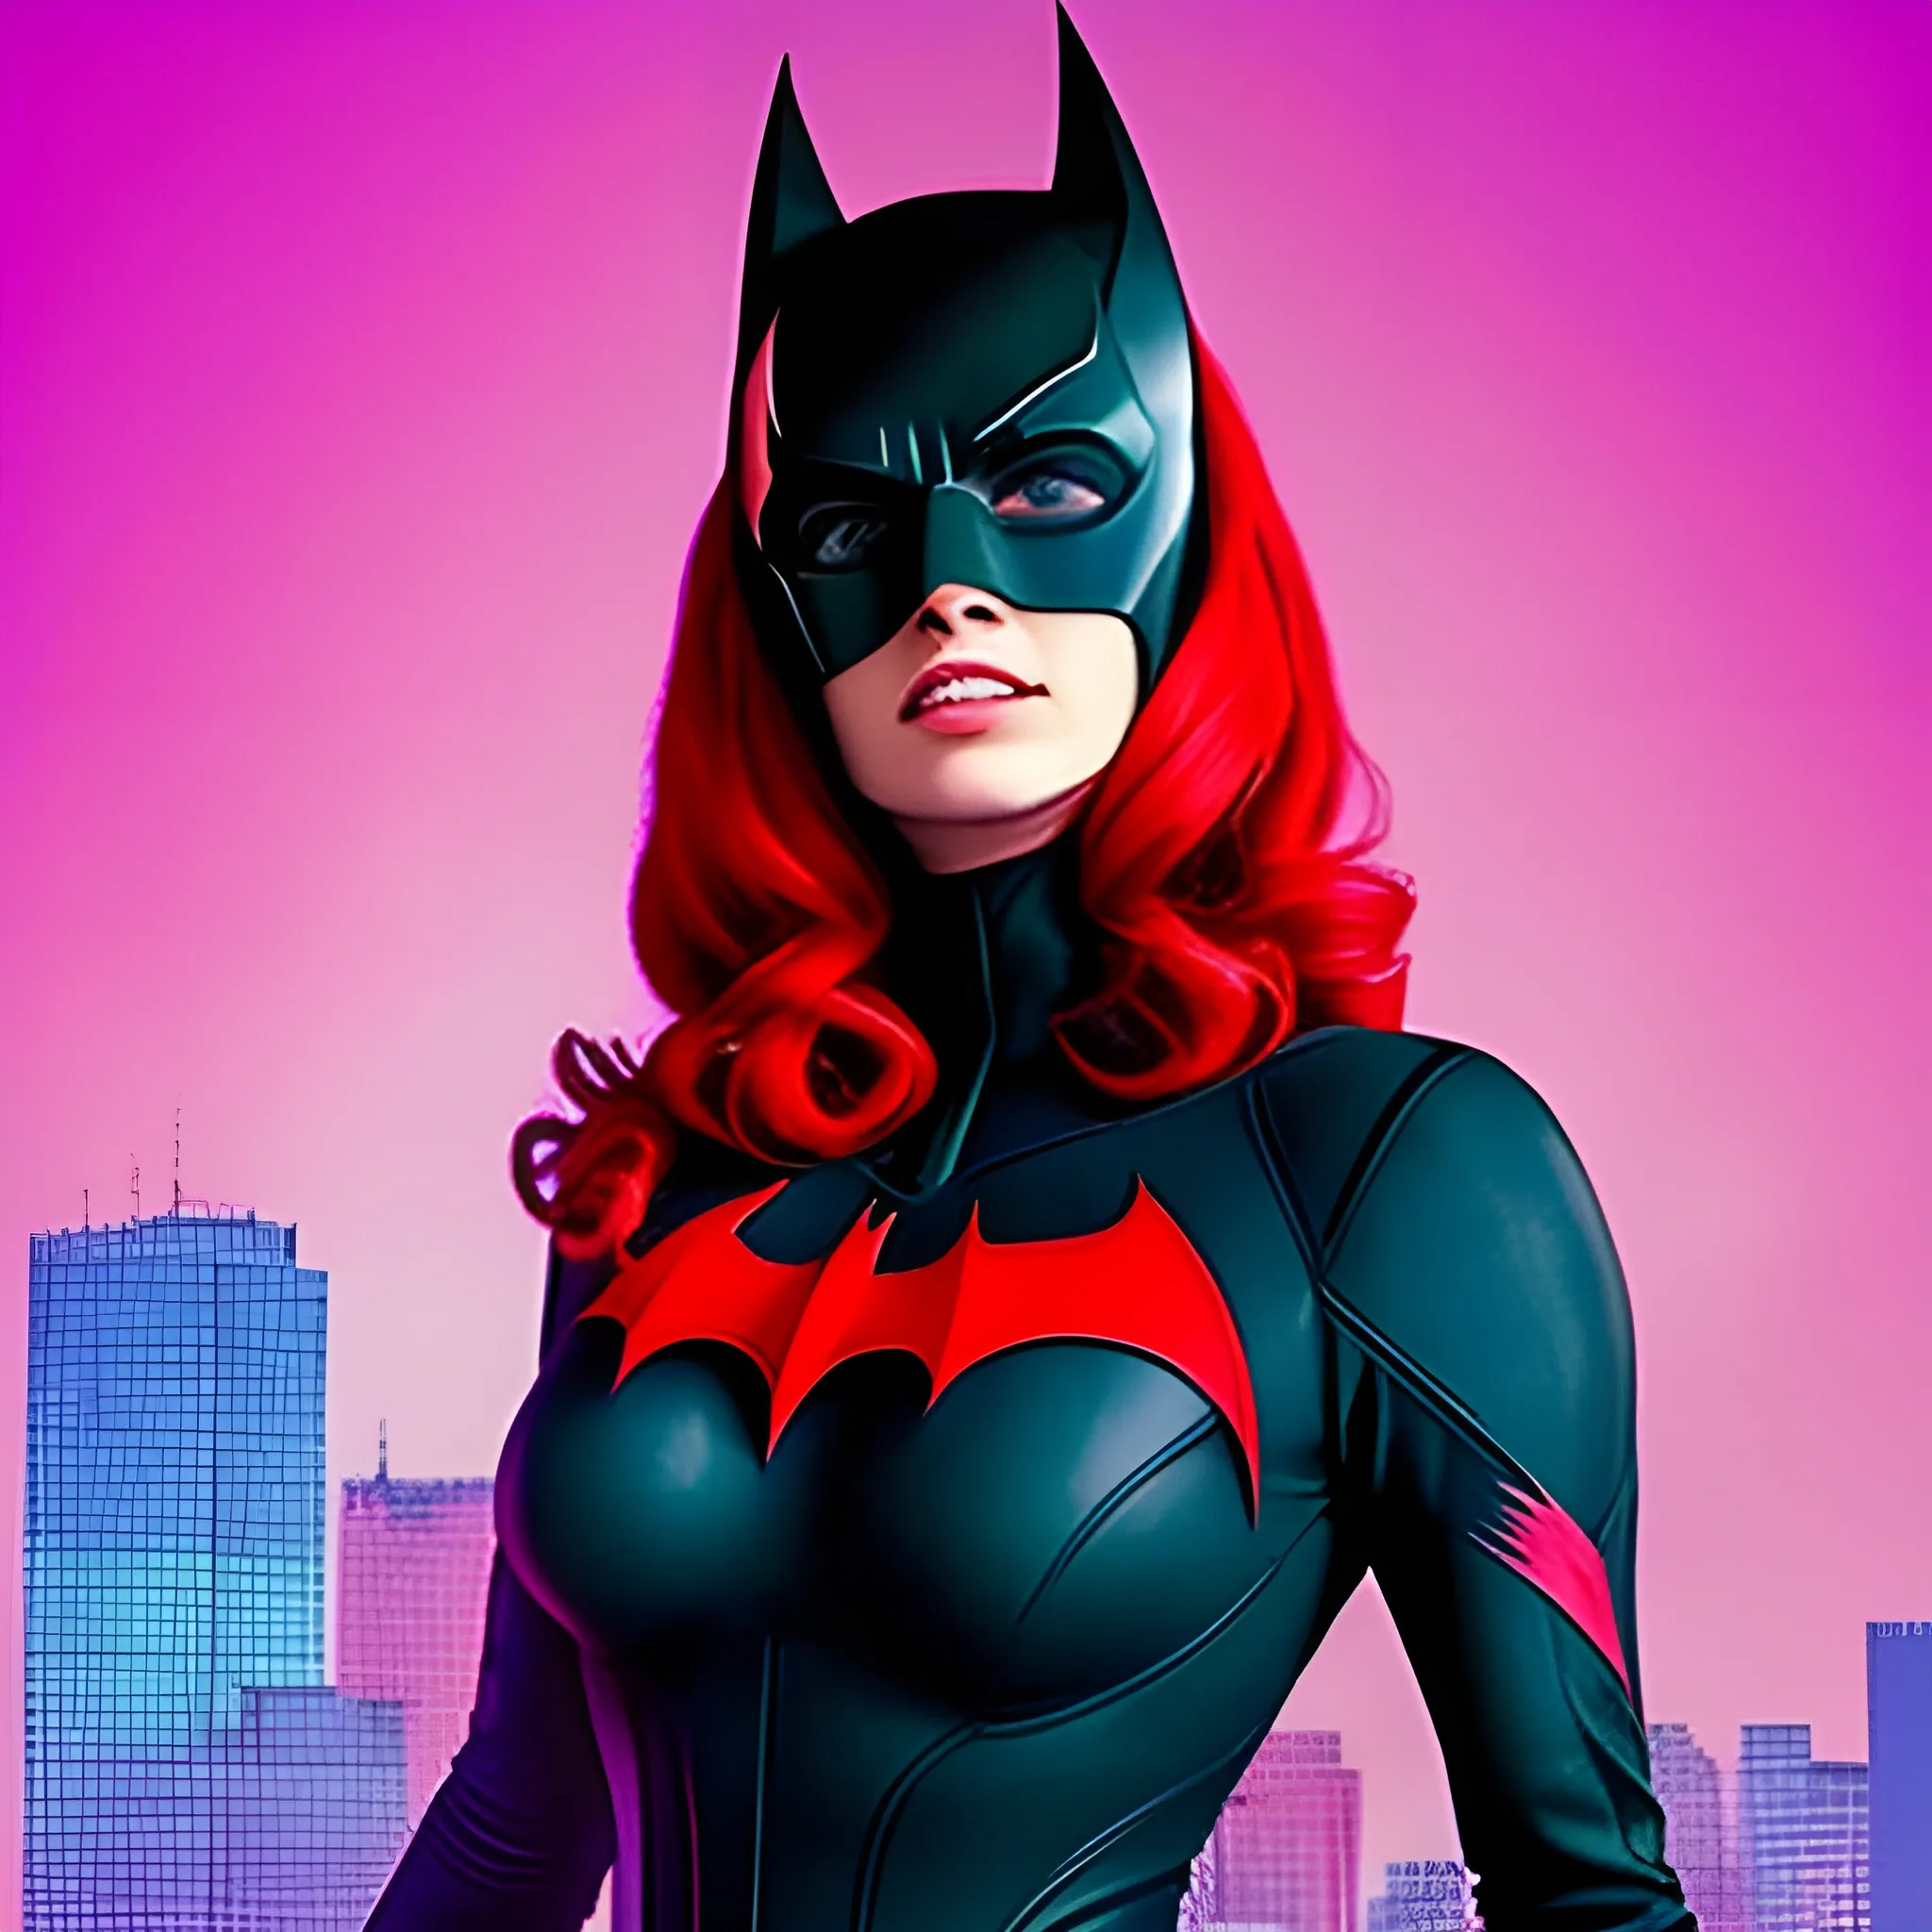 Mujer con buen cuerpo, hermosa, usa el traje de batwoman, realista, Trippy